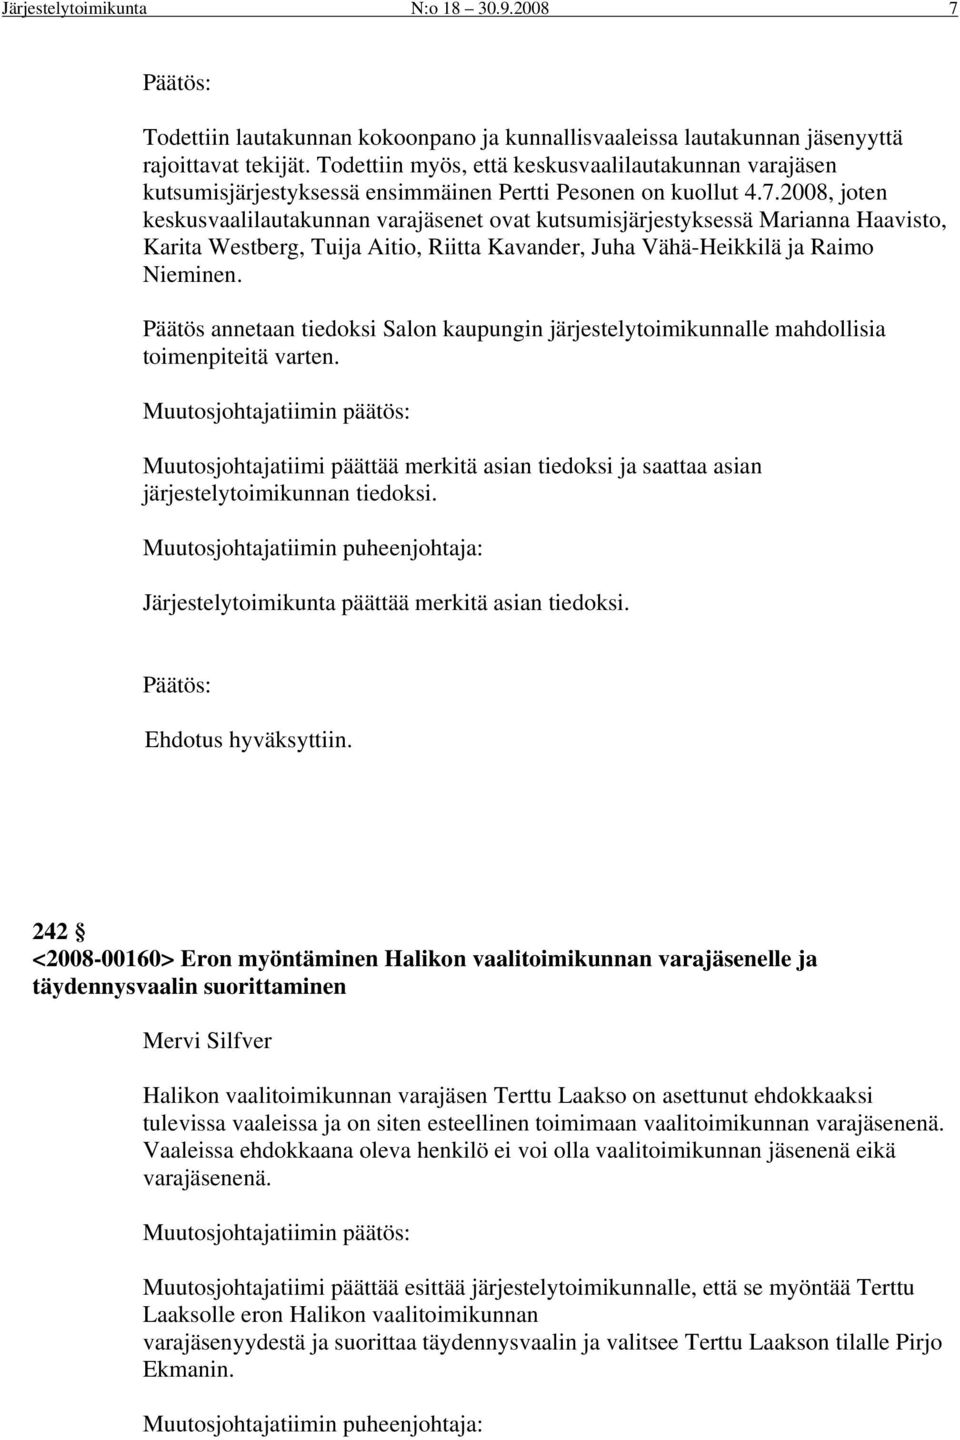 2008, joten keskusvaalilautakunnan varajäsenet ovat kutsumisjärjestyksessä Marianna Haavisto, Karita Westberg, Tuija Aitio, Riitta Kavander, Juha Vähä-Heikkilä ja Raimo Nieminen.